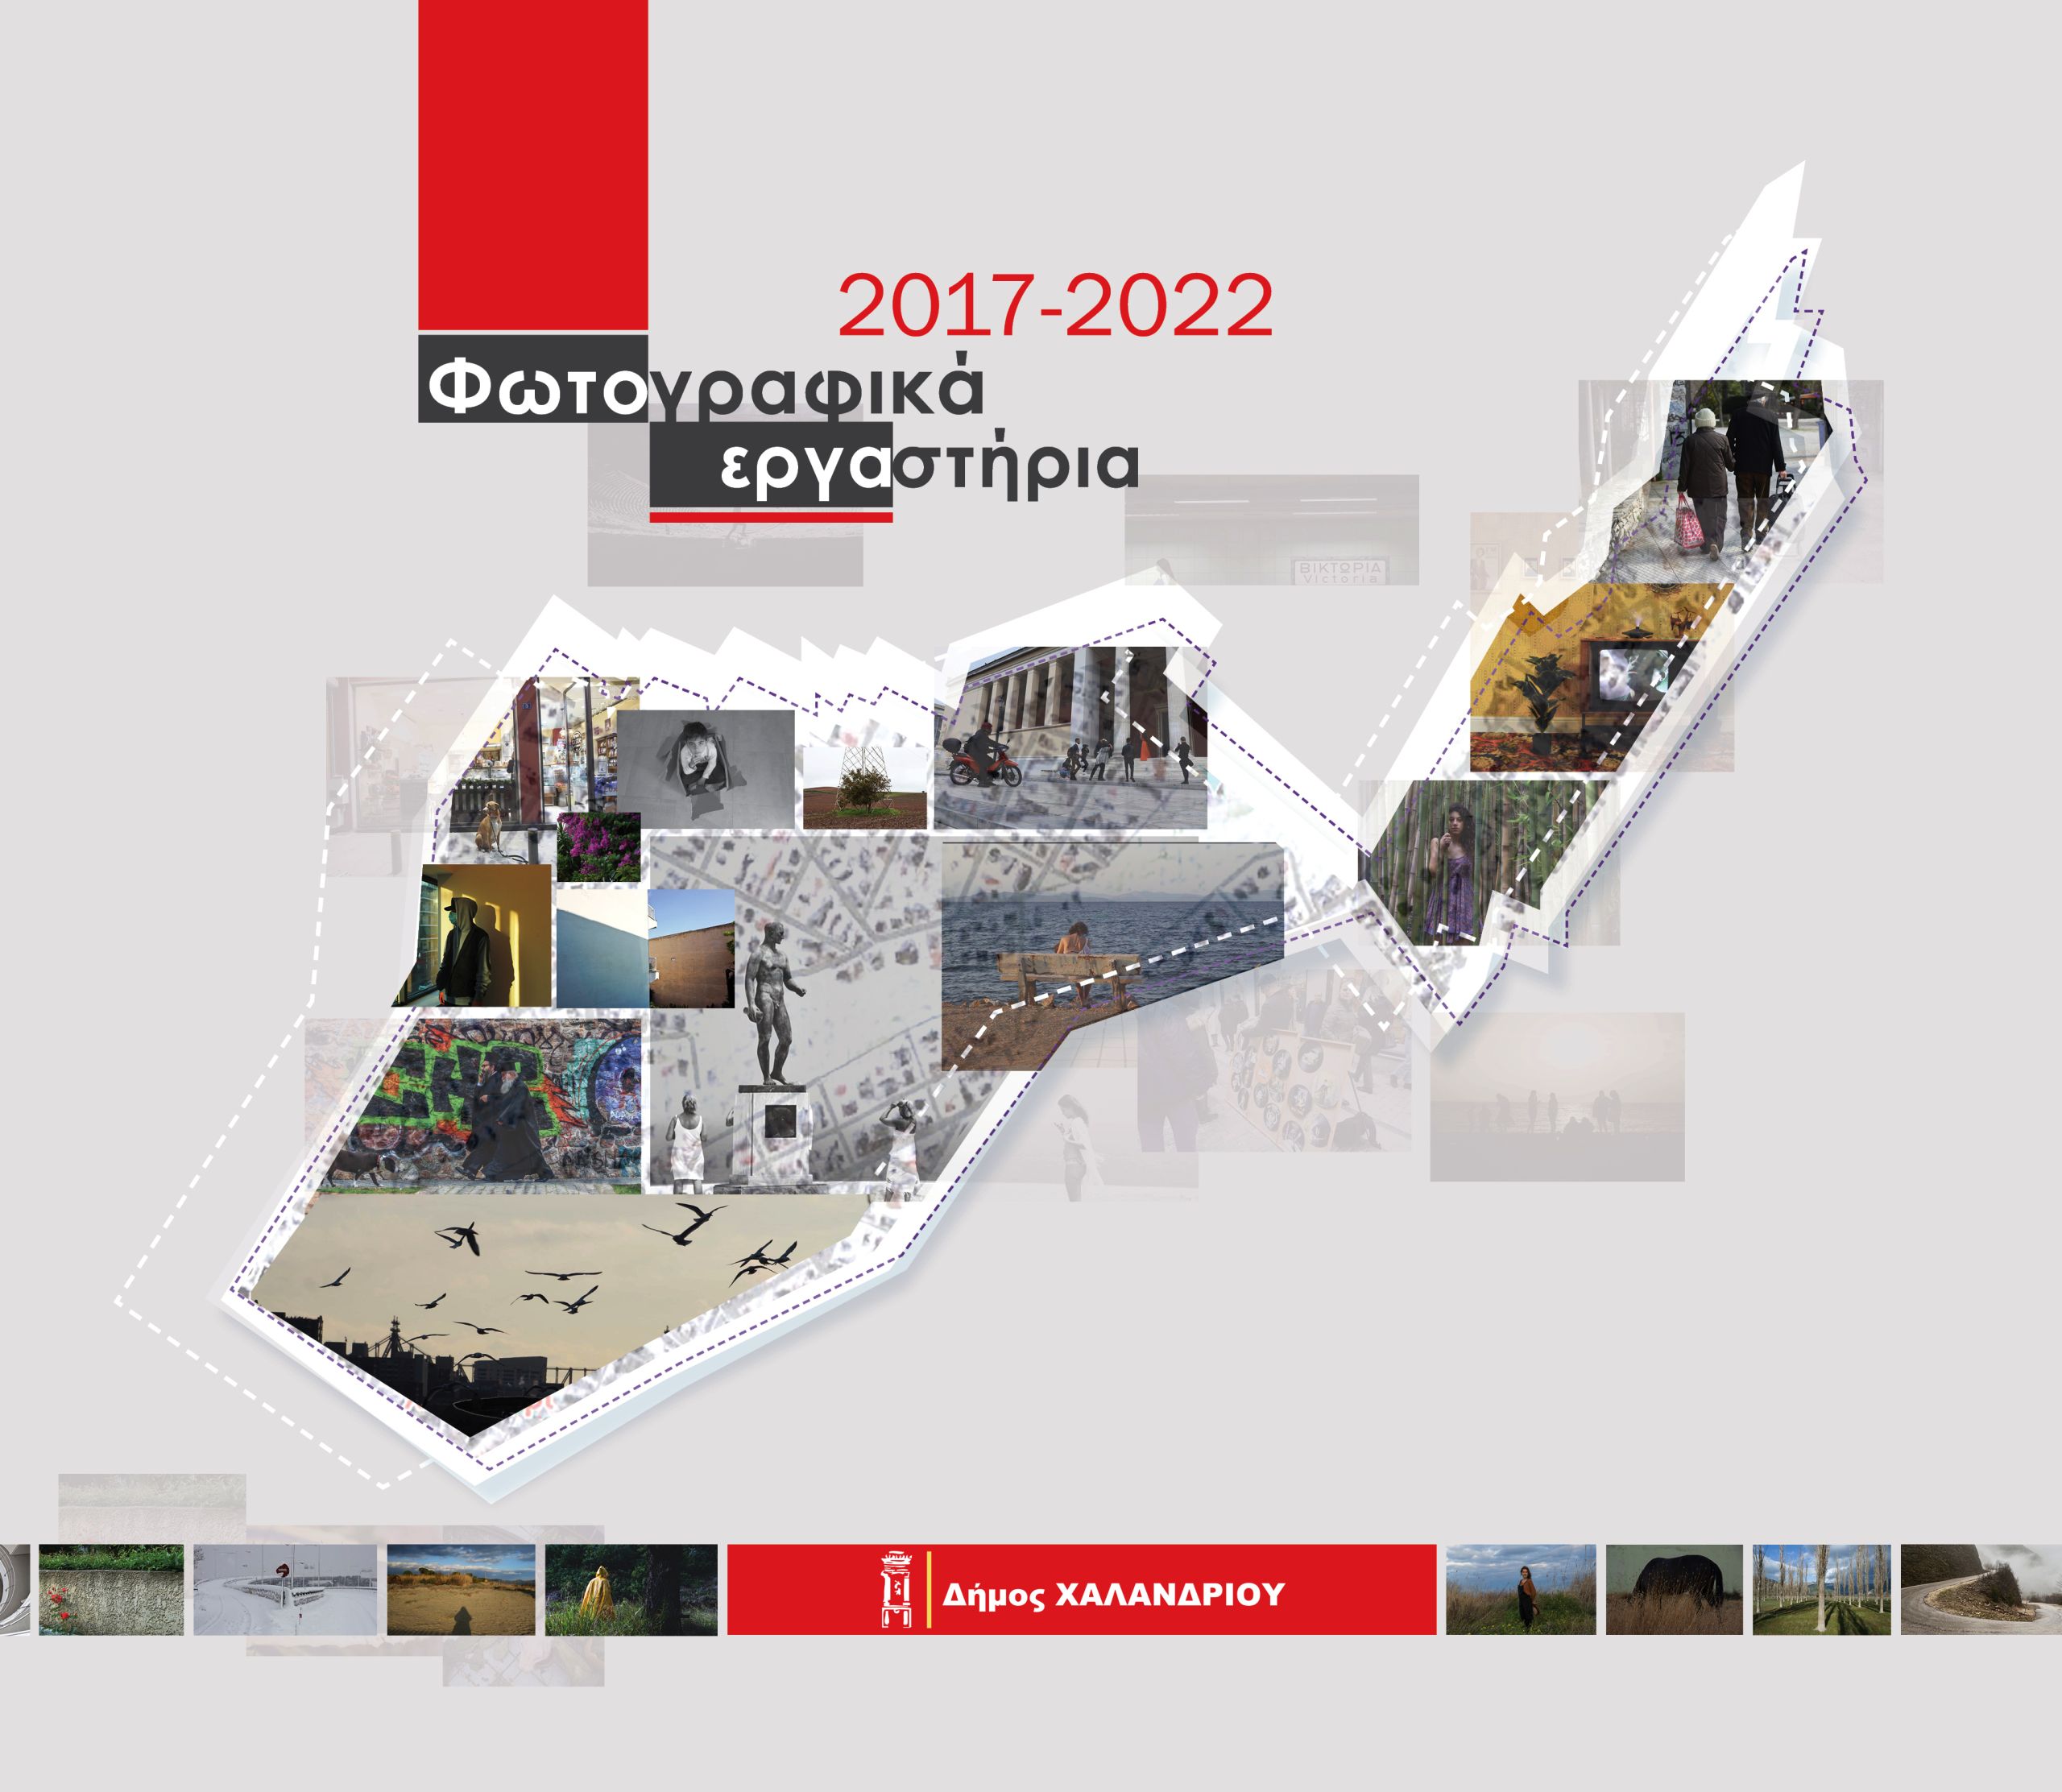 Δήμος Χαλανδρίου: Παρουσίαση του λευκώματος «Φωτογραφικά εργαστήρια 2017- 2022»